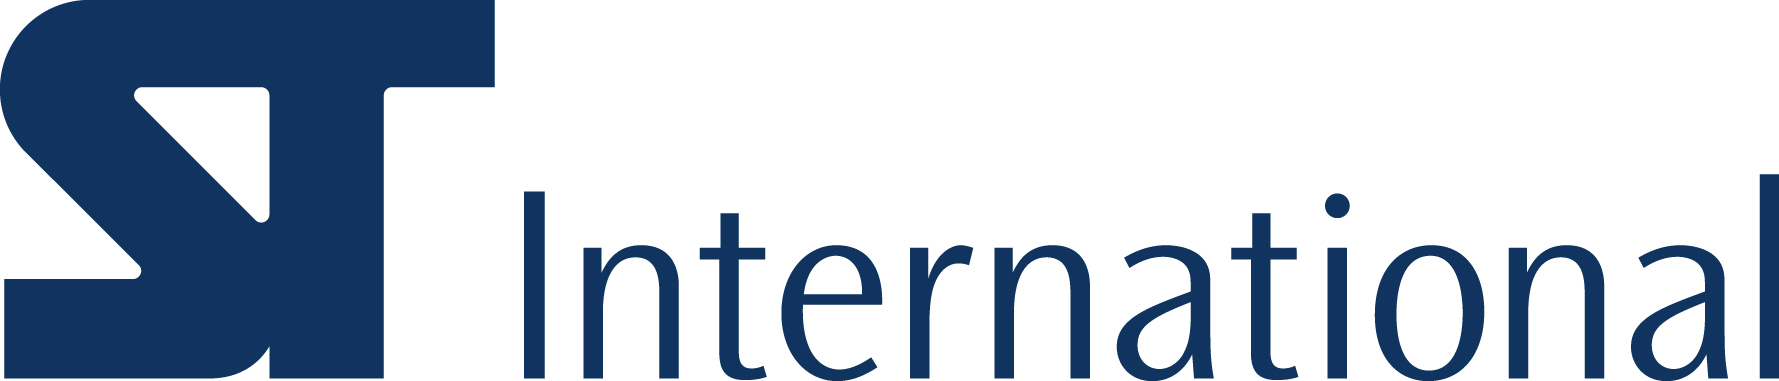 삼천리의 계열사 (주)에스티인터내셔널코퍼레이션의 로고